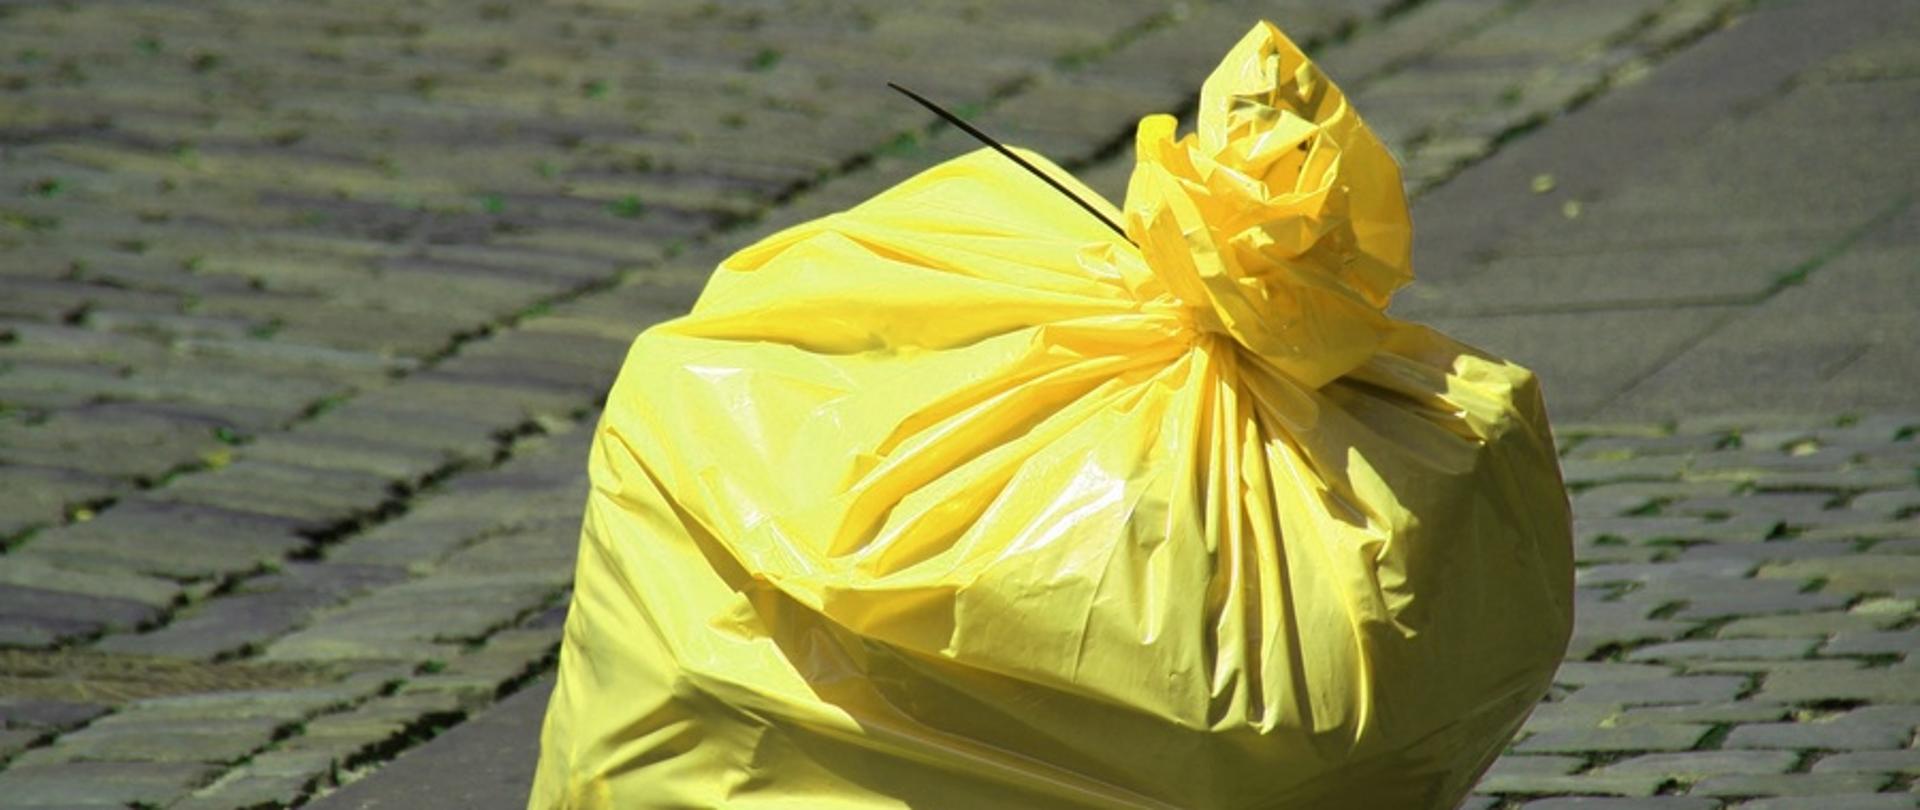 Żółty worek z odpadami zawiązany opaską zaciskową, pozostawiony na wybrukowanej nawierzchni